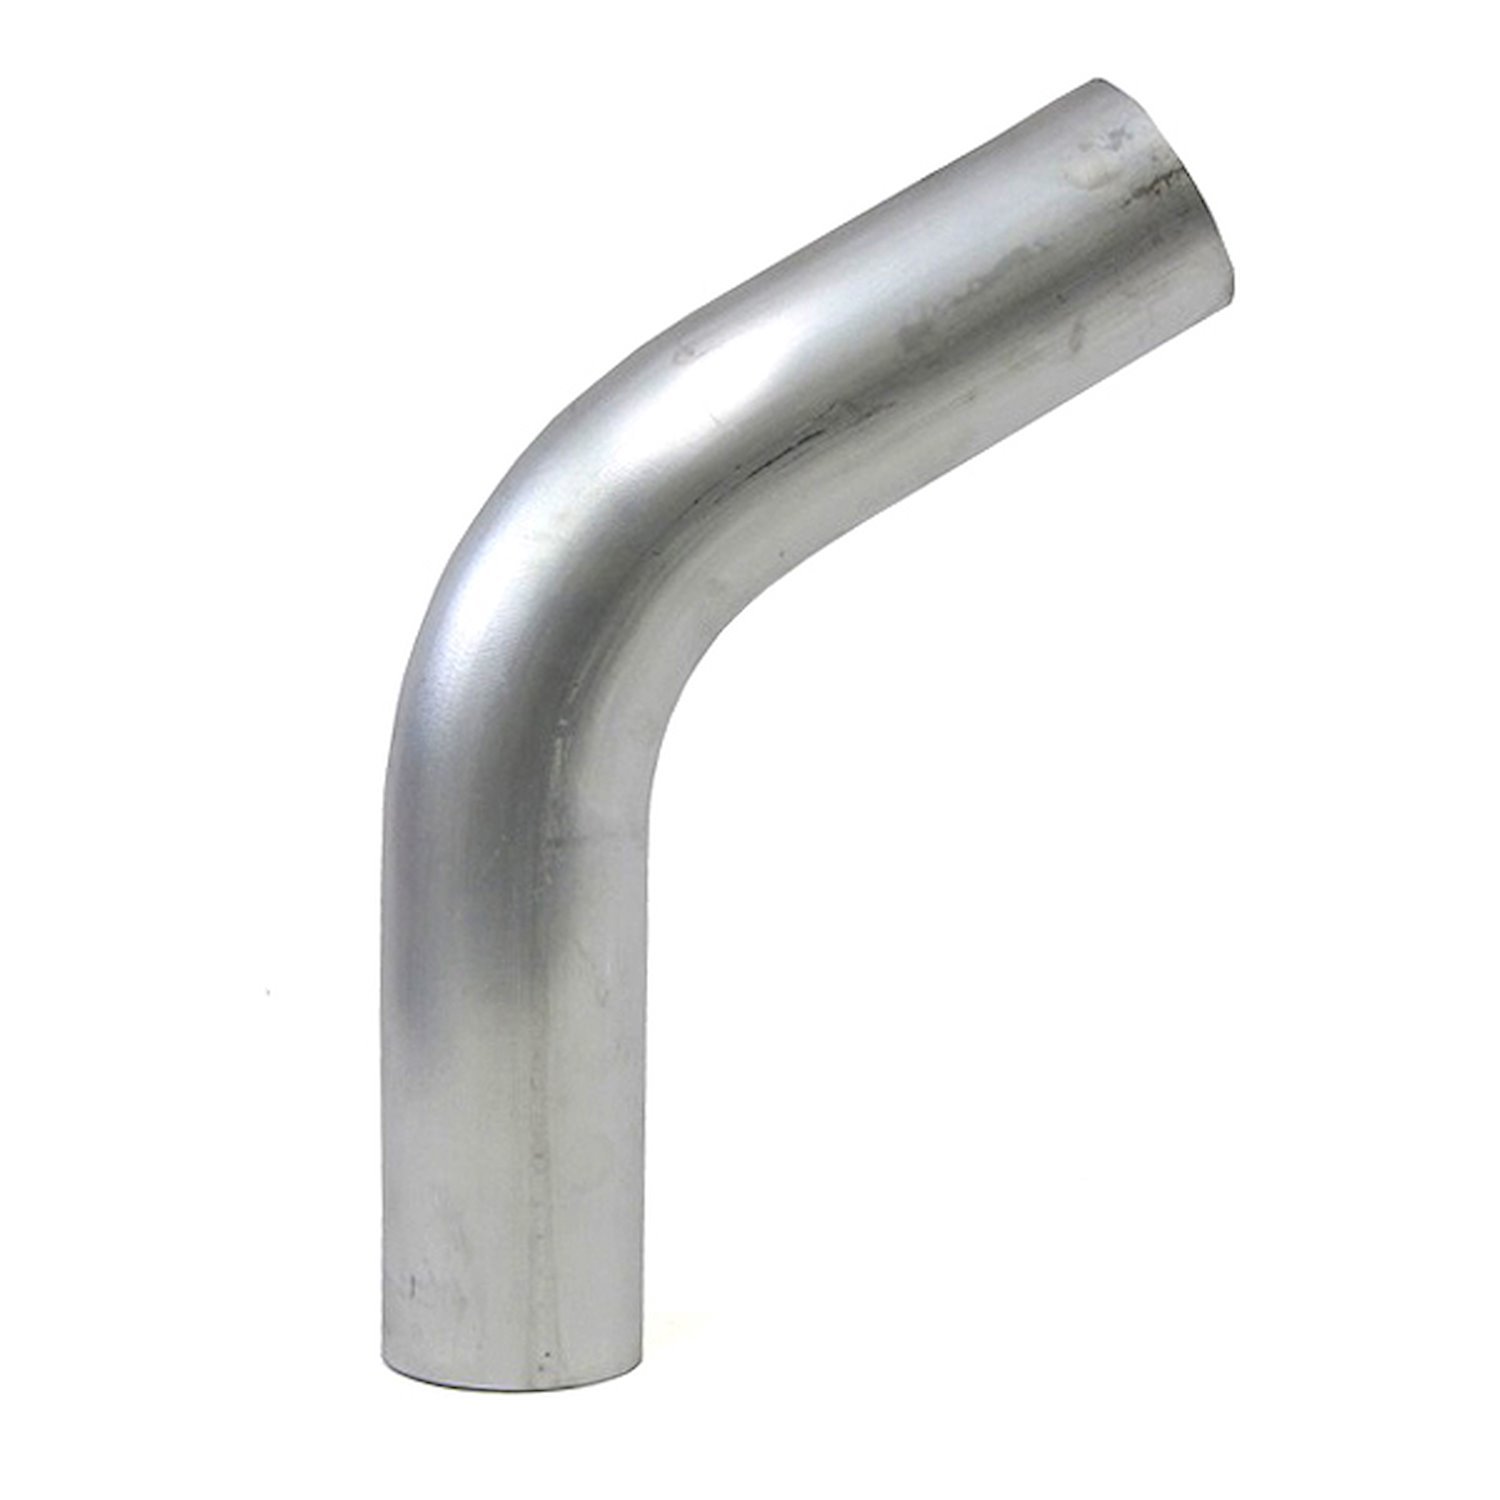 AT60-138-CLR-175 Aluminum Elbow Tube, 6061 Aluminum, 60-Degree Bend Elbow Tubing, 1-3/8 in. OD, Tight Radius, 1-3/4 in. CLR